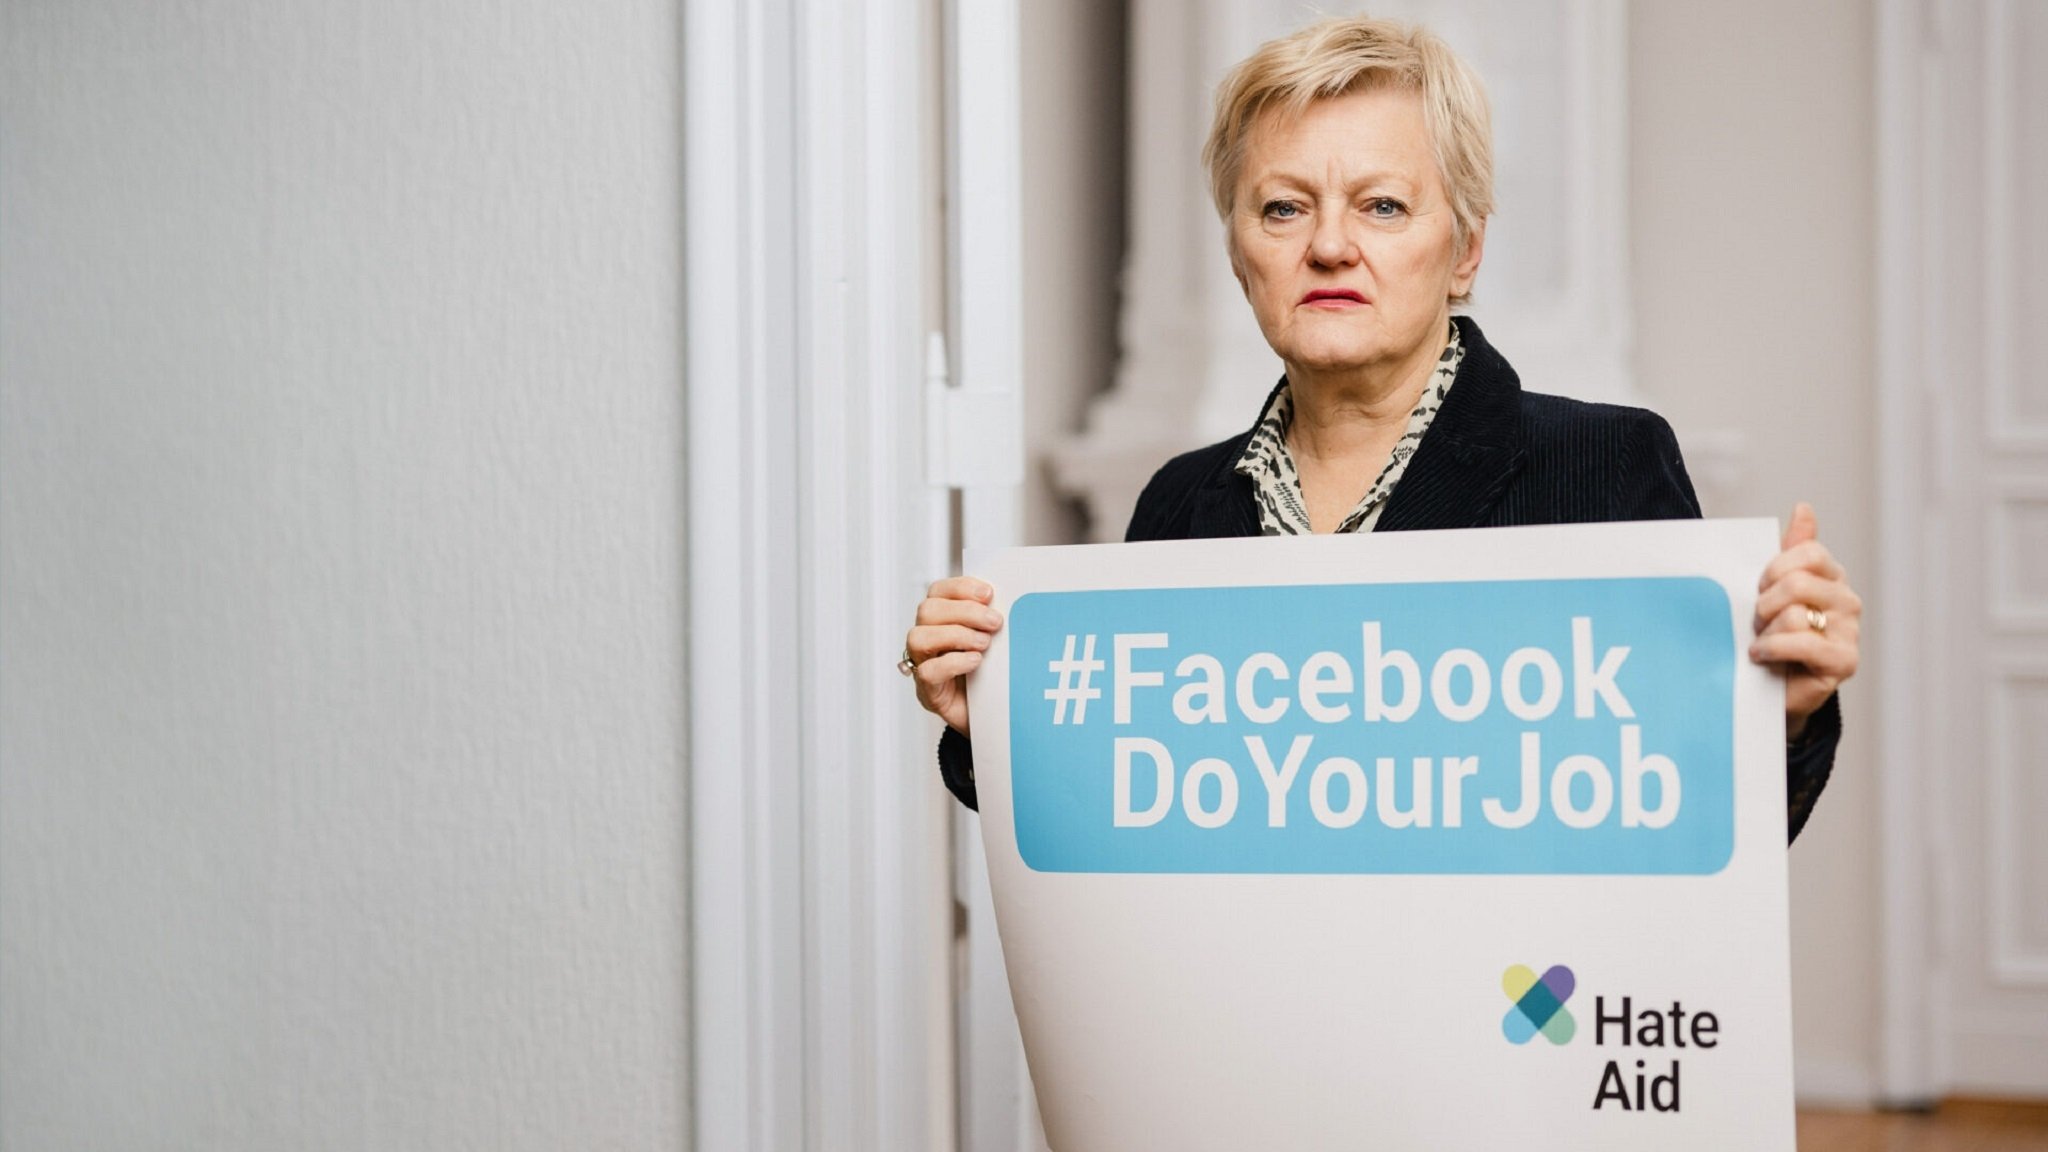 Renate Künast hält ein Plakat hoch: "Facebook Do Your Job"